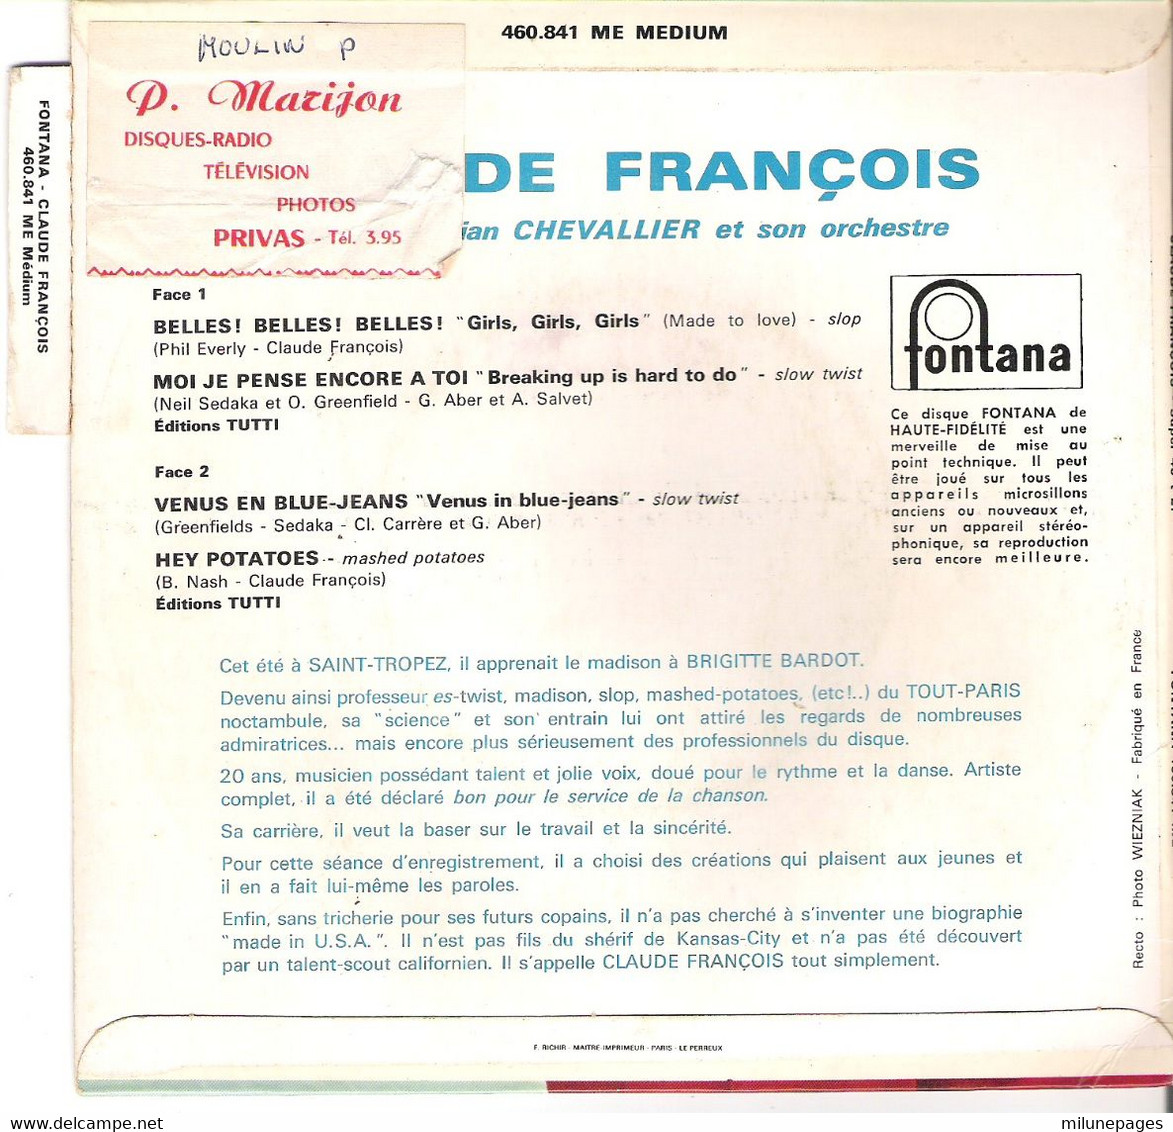 Vinyle 45T EP 4 Chansons Claude François Belles Belles  Fontana 460.841 Version Etiquette Blanche - Collector's Editions